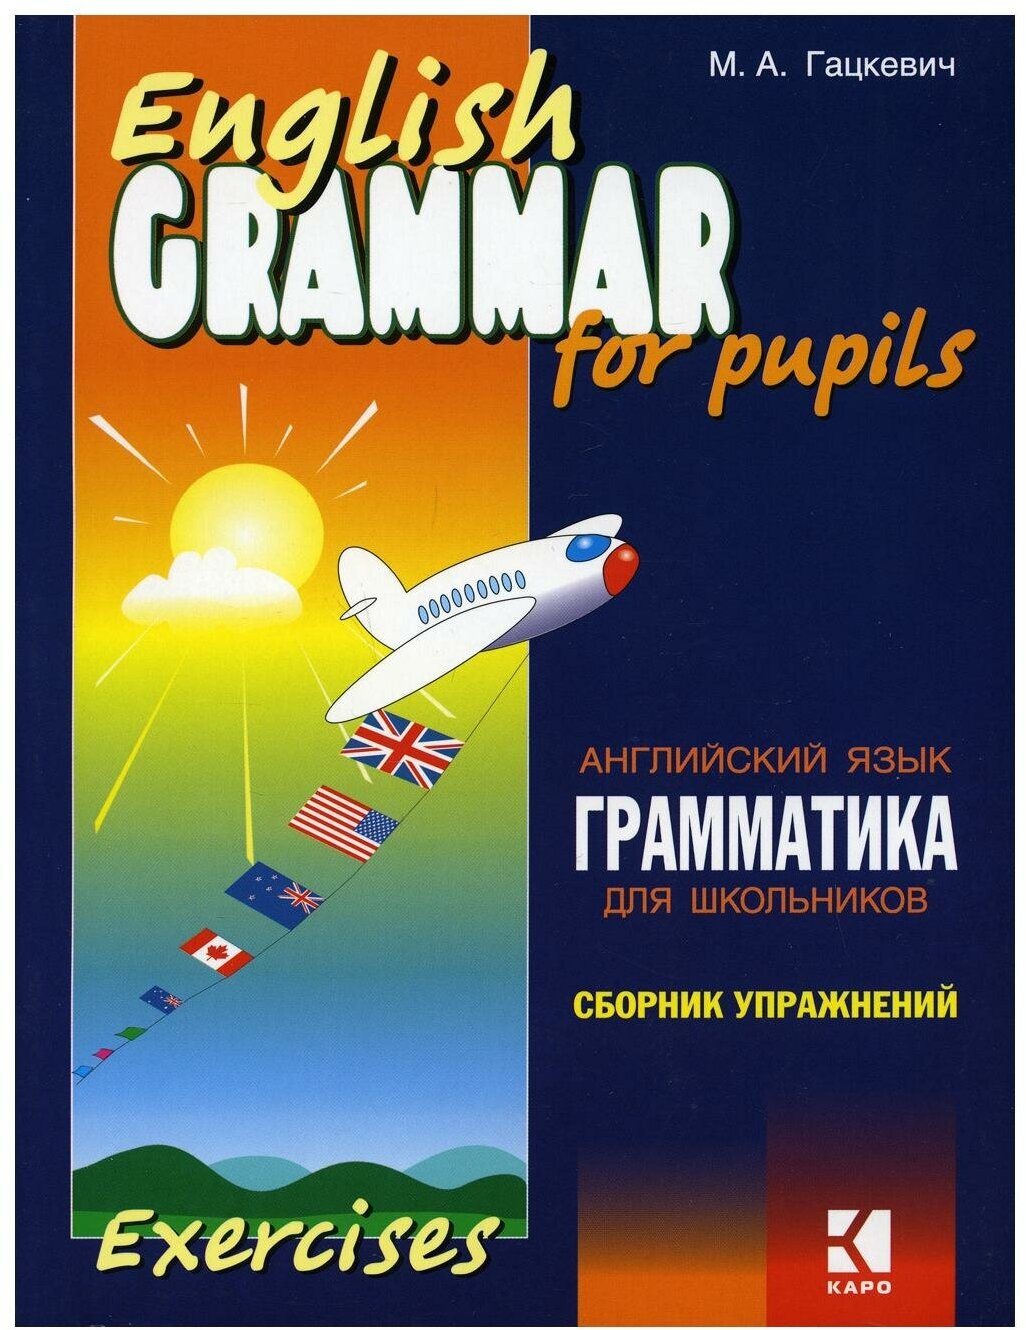 Грамматика английского языка для школьников. Сборник упражнений Кн. II 2-е изд.